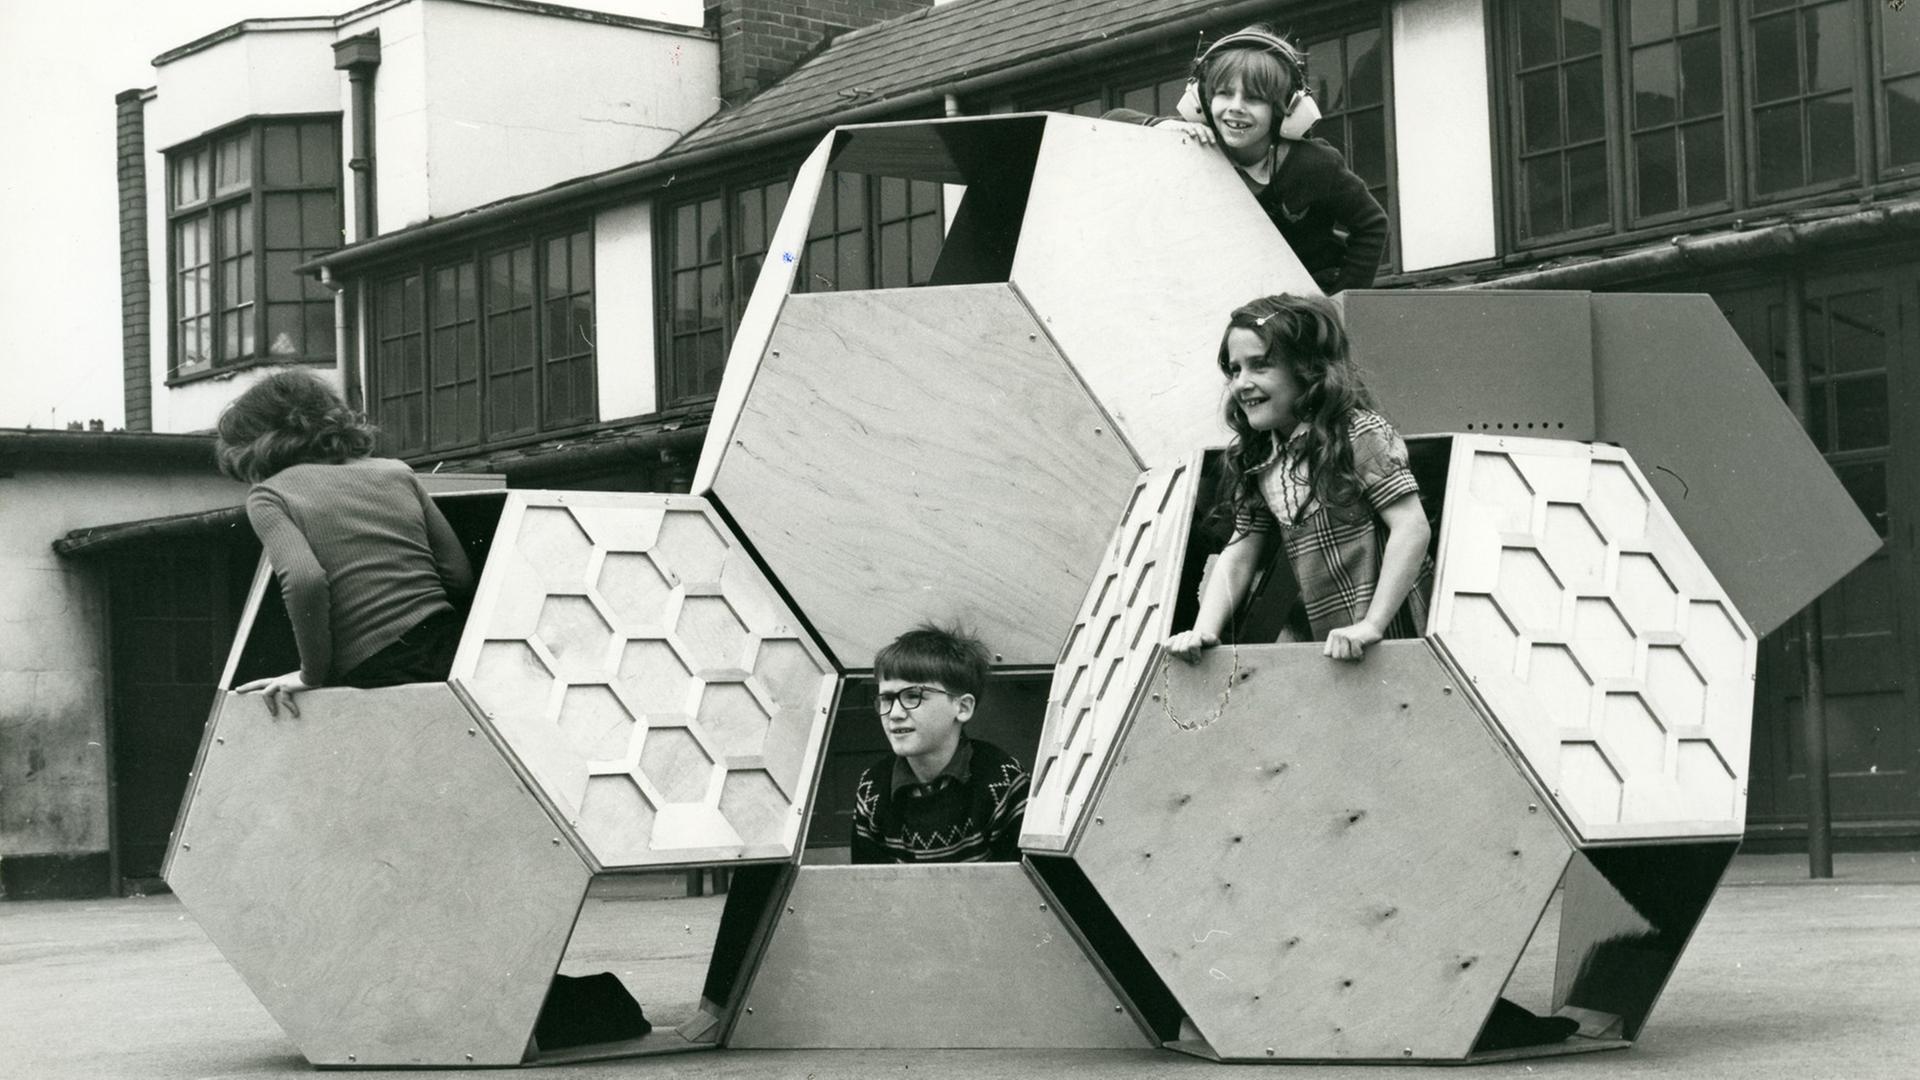 Victor J. Papanek "Tetrakaidecahedron", 1973-1975 (bewegliche Spielplatz-Struktur; entworfen mit einem Studenten, Eltern, Lehrern und Schülern)